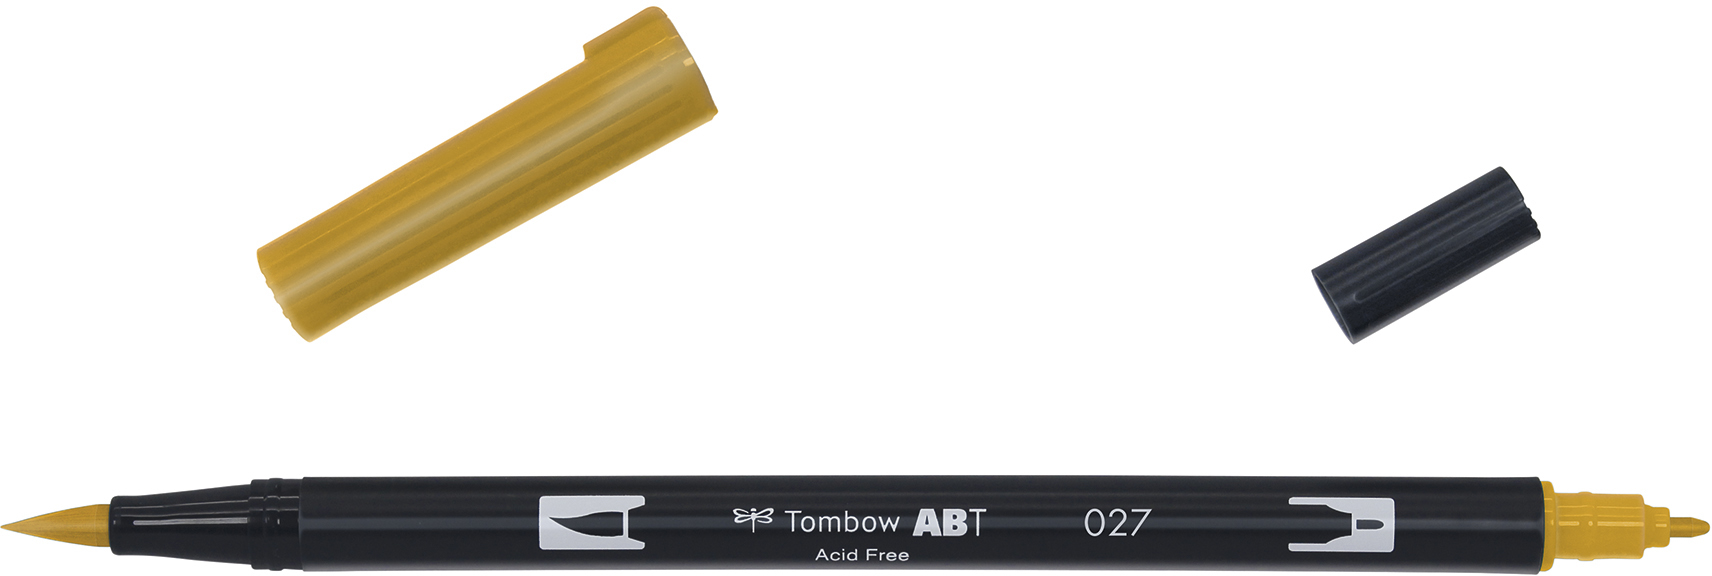 TOMBOW Dual Brush Pen ABT 027 ocre foncé ocre foncé